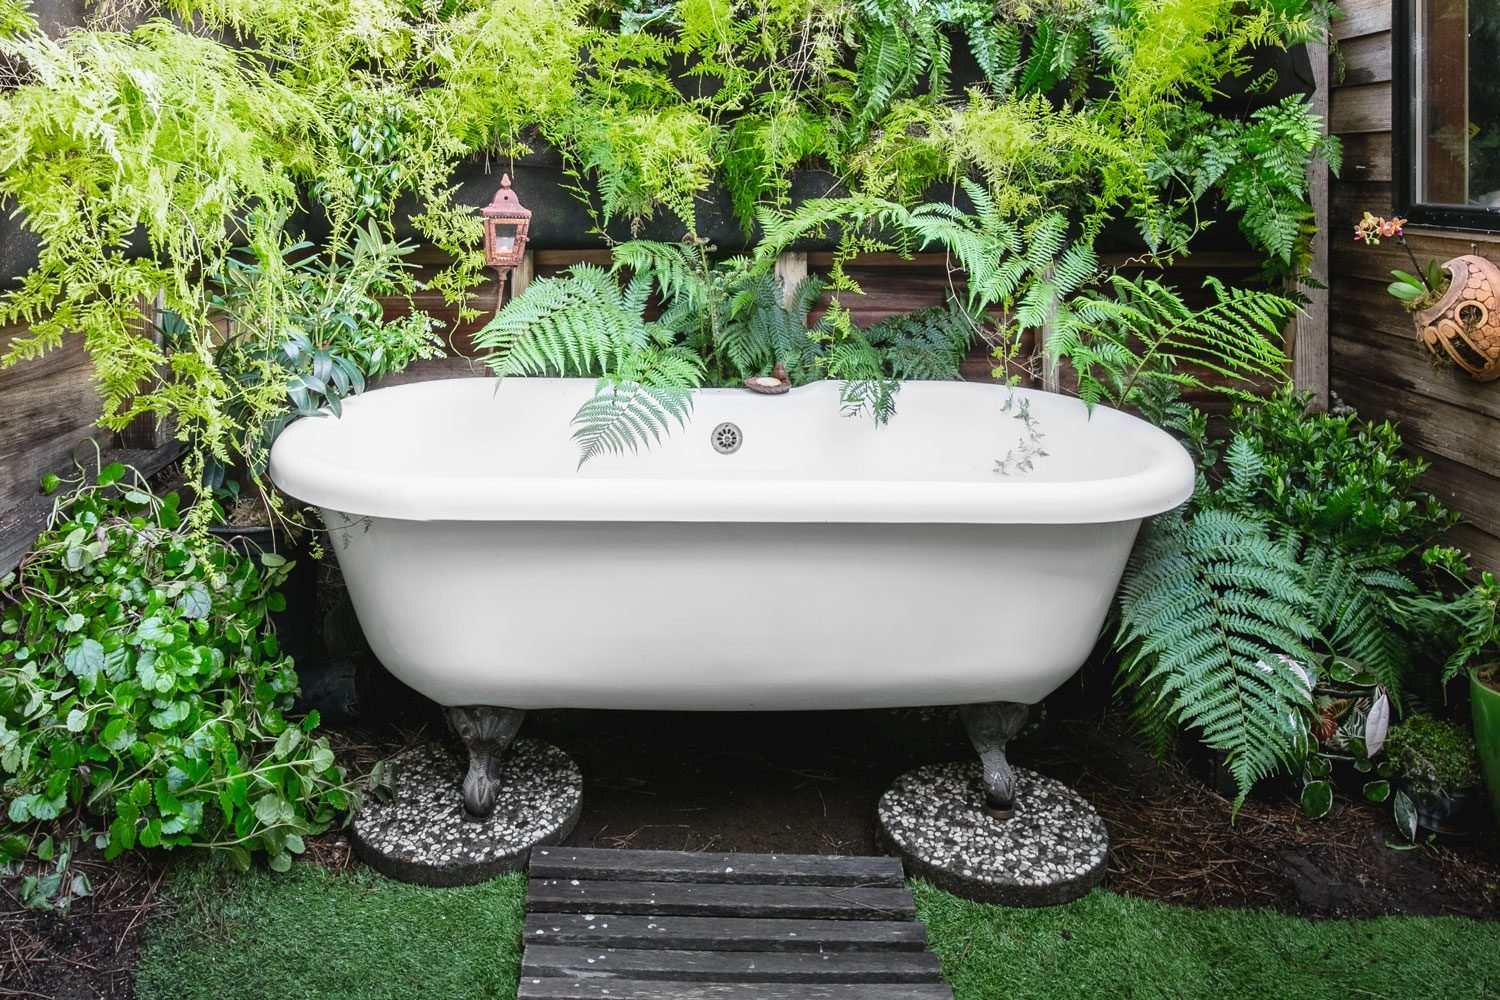 Should You Get a Backyard Bathtub?